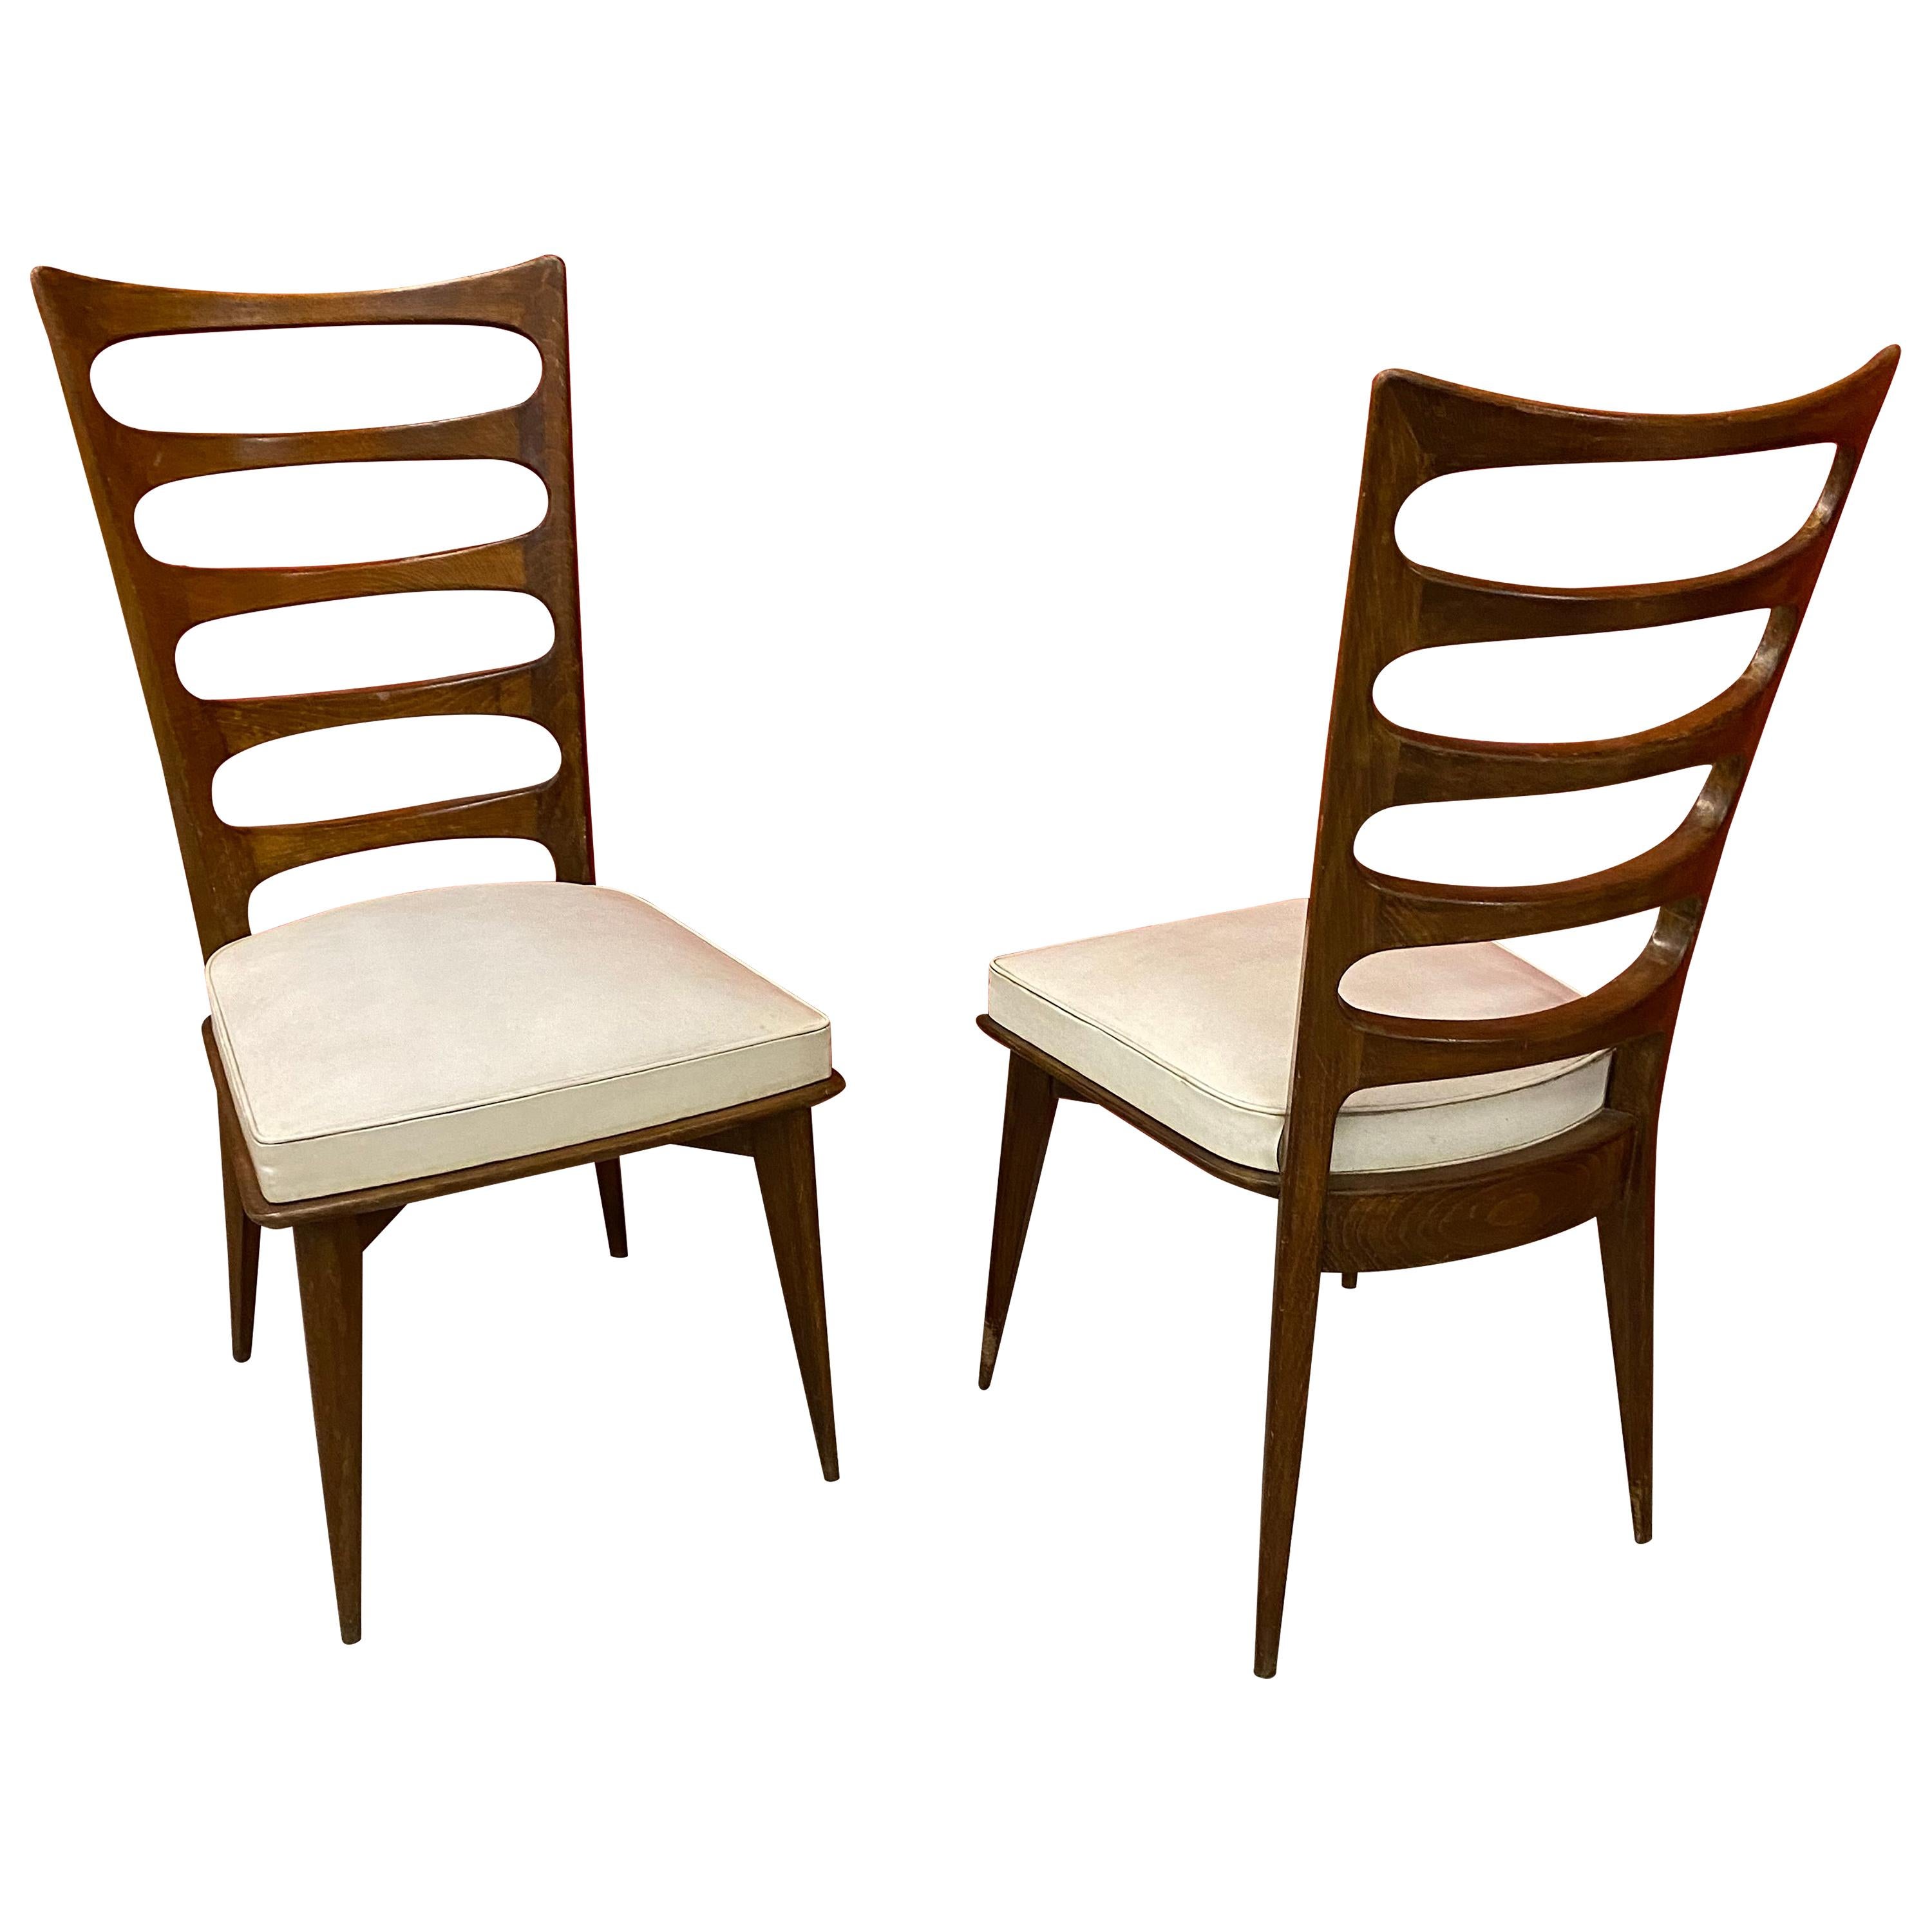 Gaston Poisson, 2 Elegant Chairs circa 1950-1960 